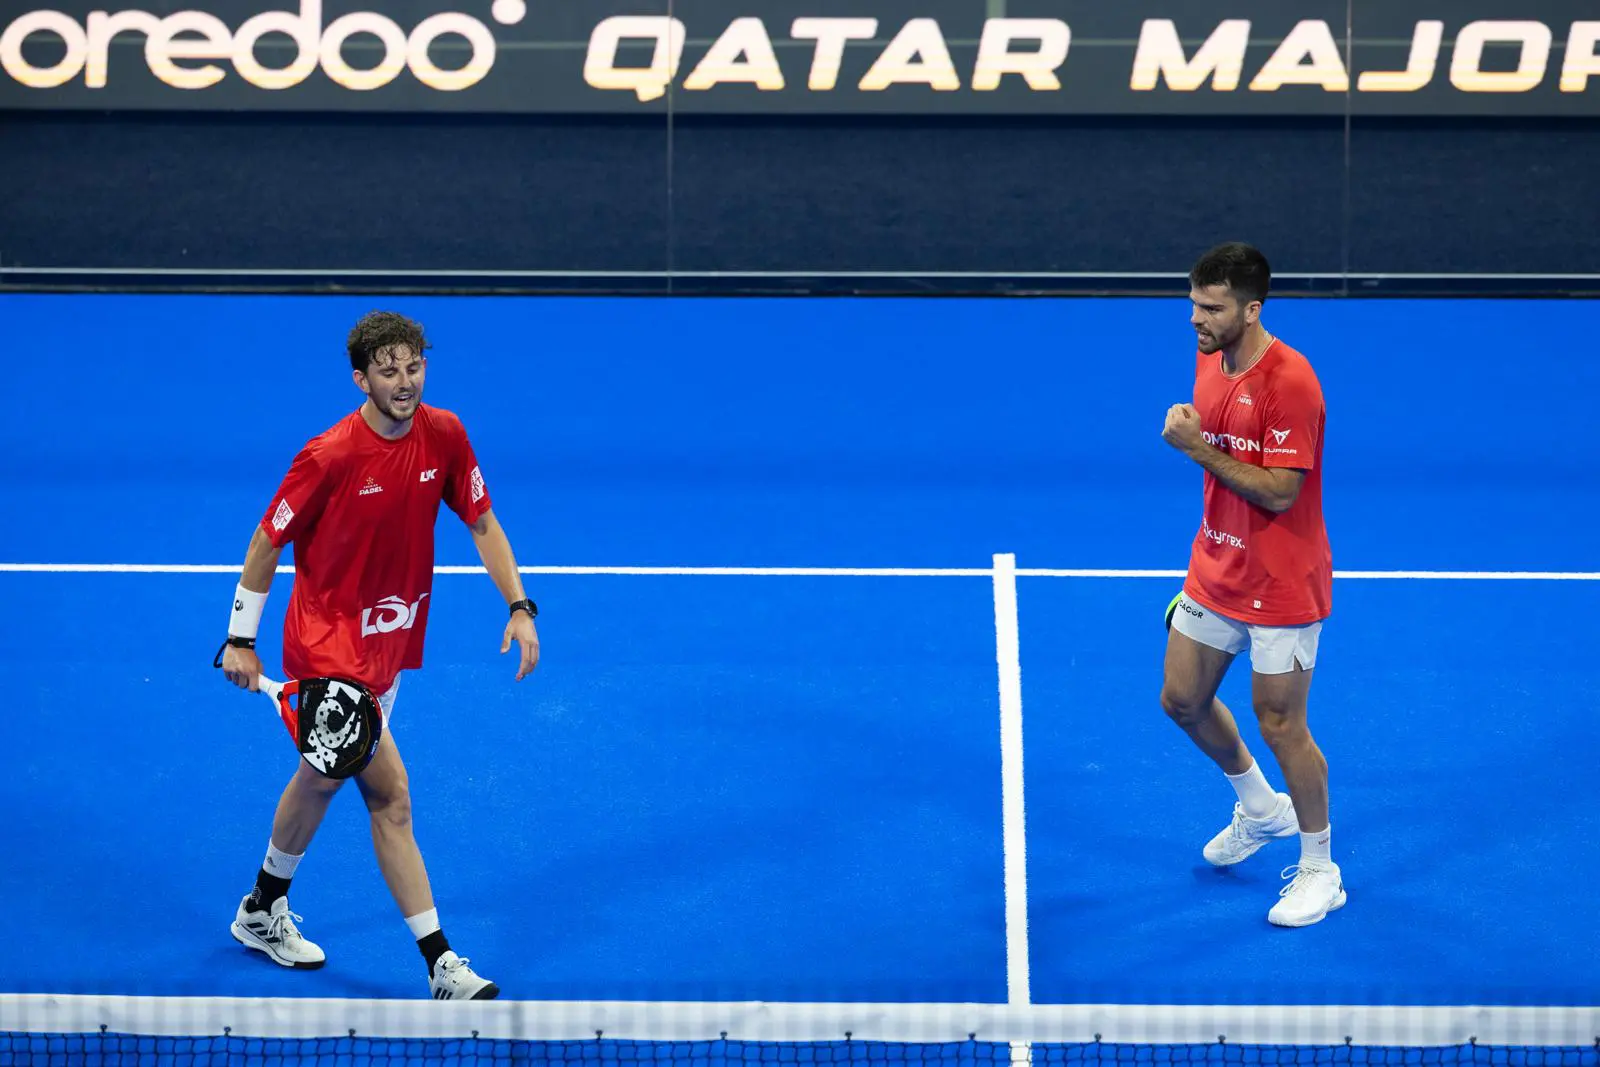 Qatar Major – Mike Yanguas und Javi Garrido vernichten den Titelverteidiger und erreichen das Finale